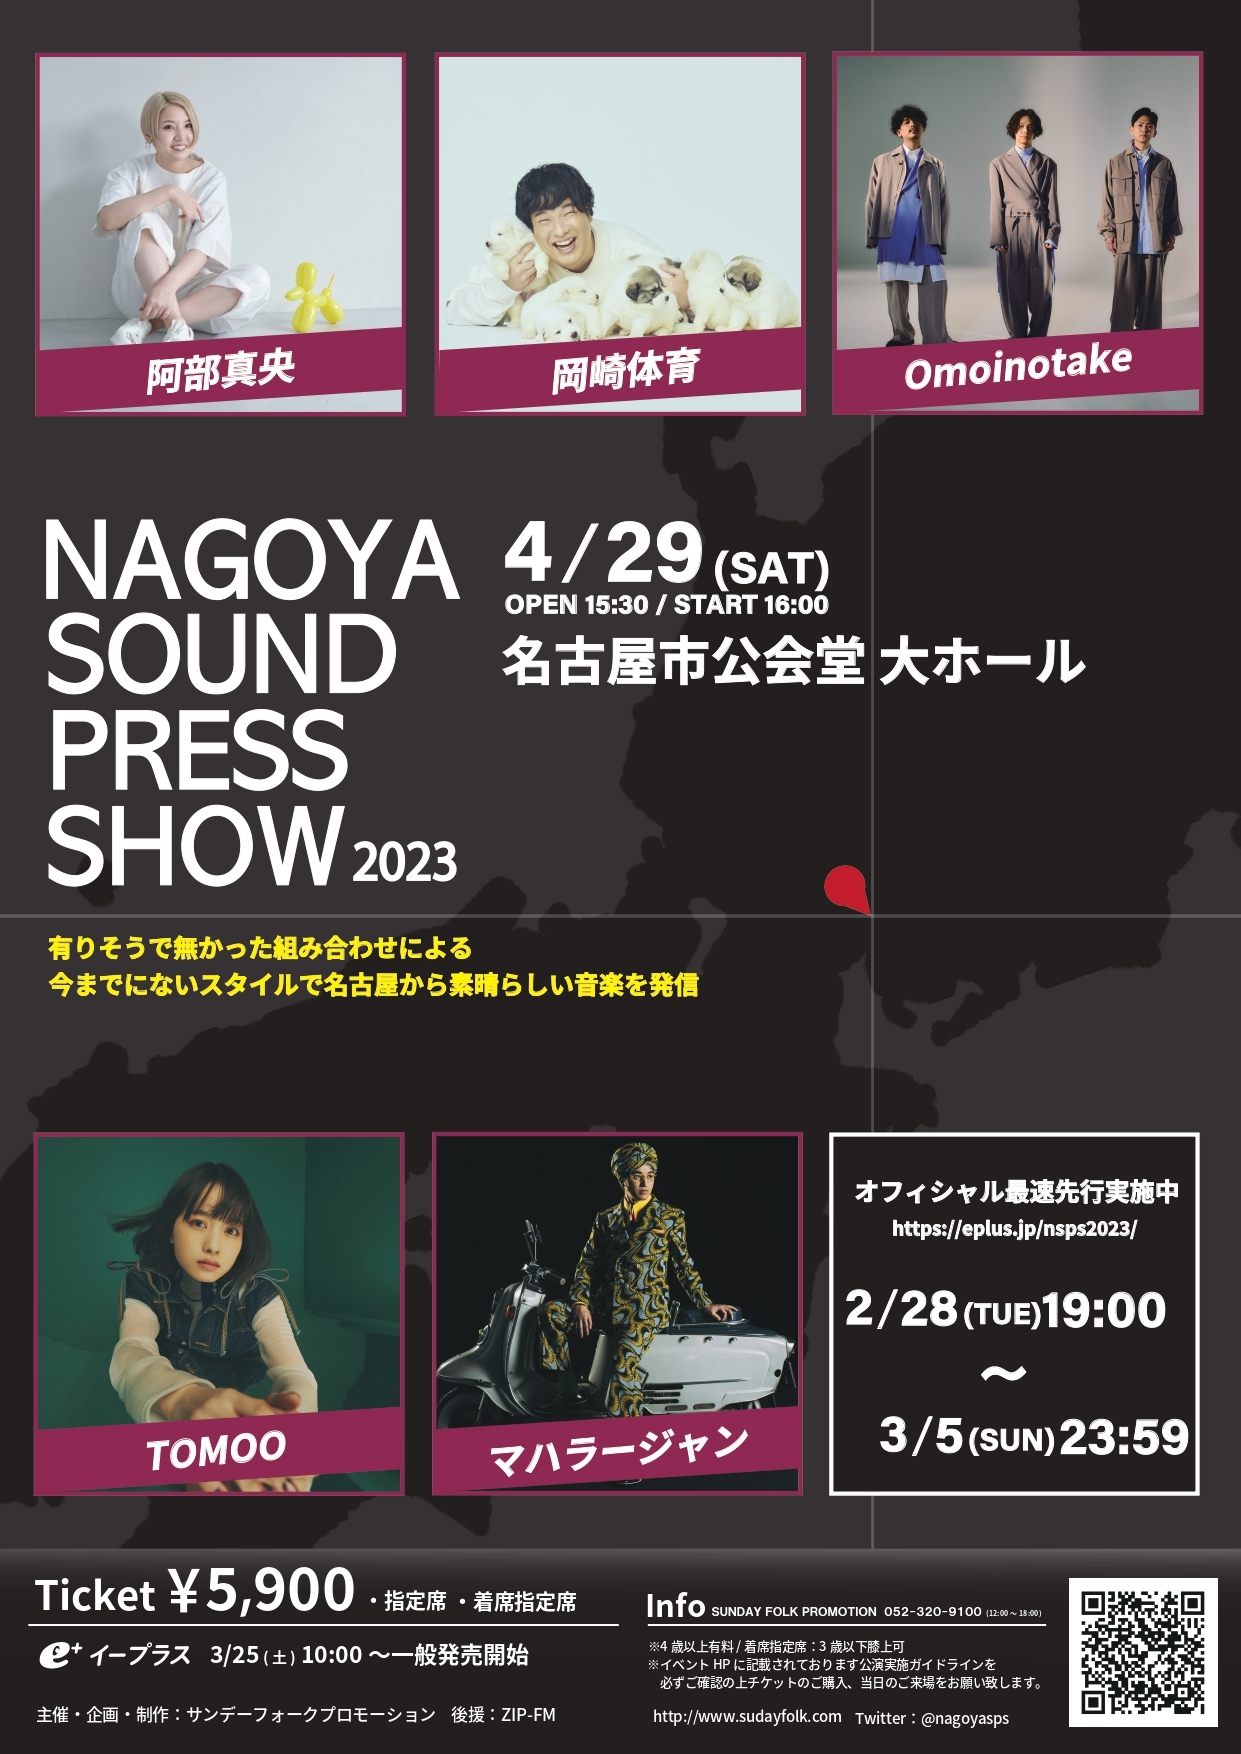 『NAGOYA SOUND PRESS SHOW 2023』